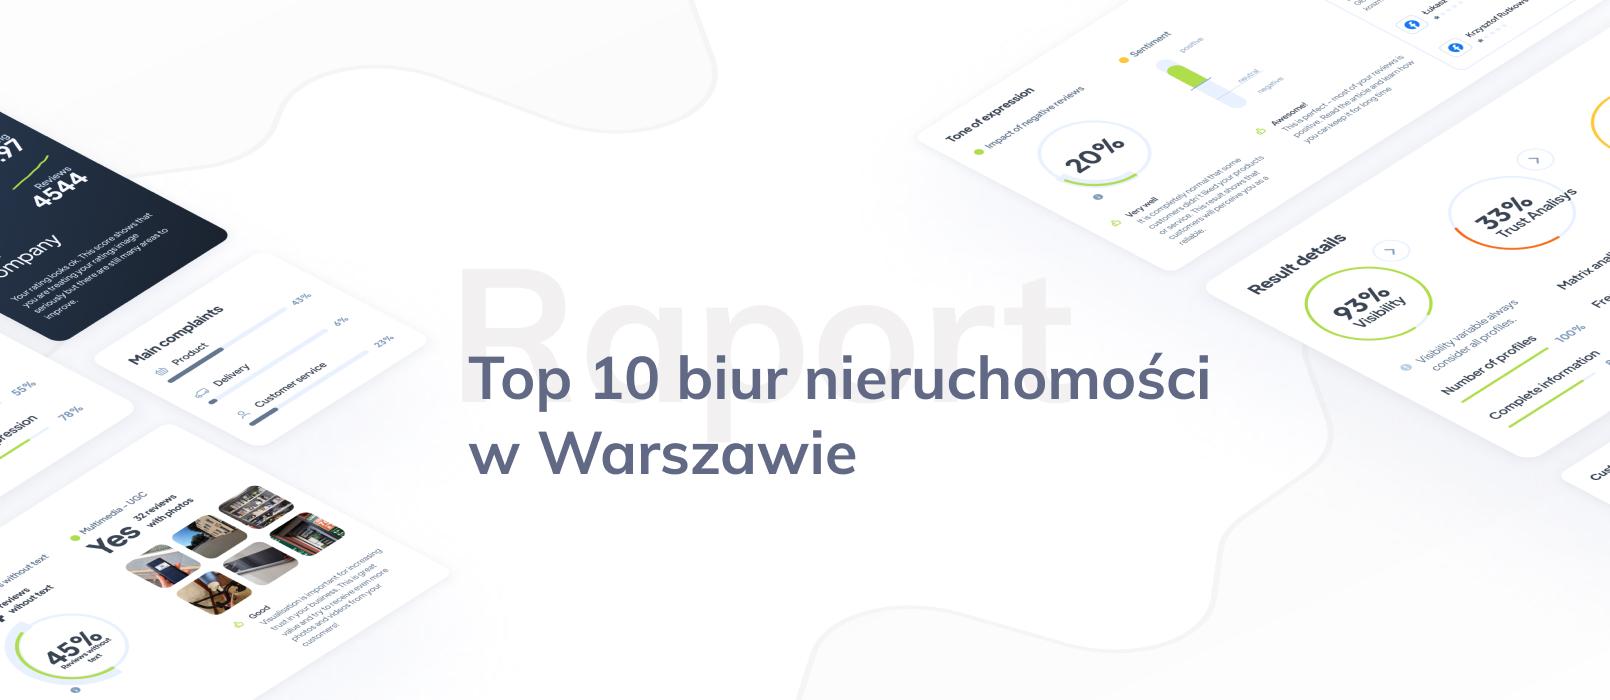 Biura Nieruchomości Warszawa – TOP 10 Agencji Nieruchomości